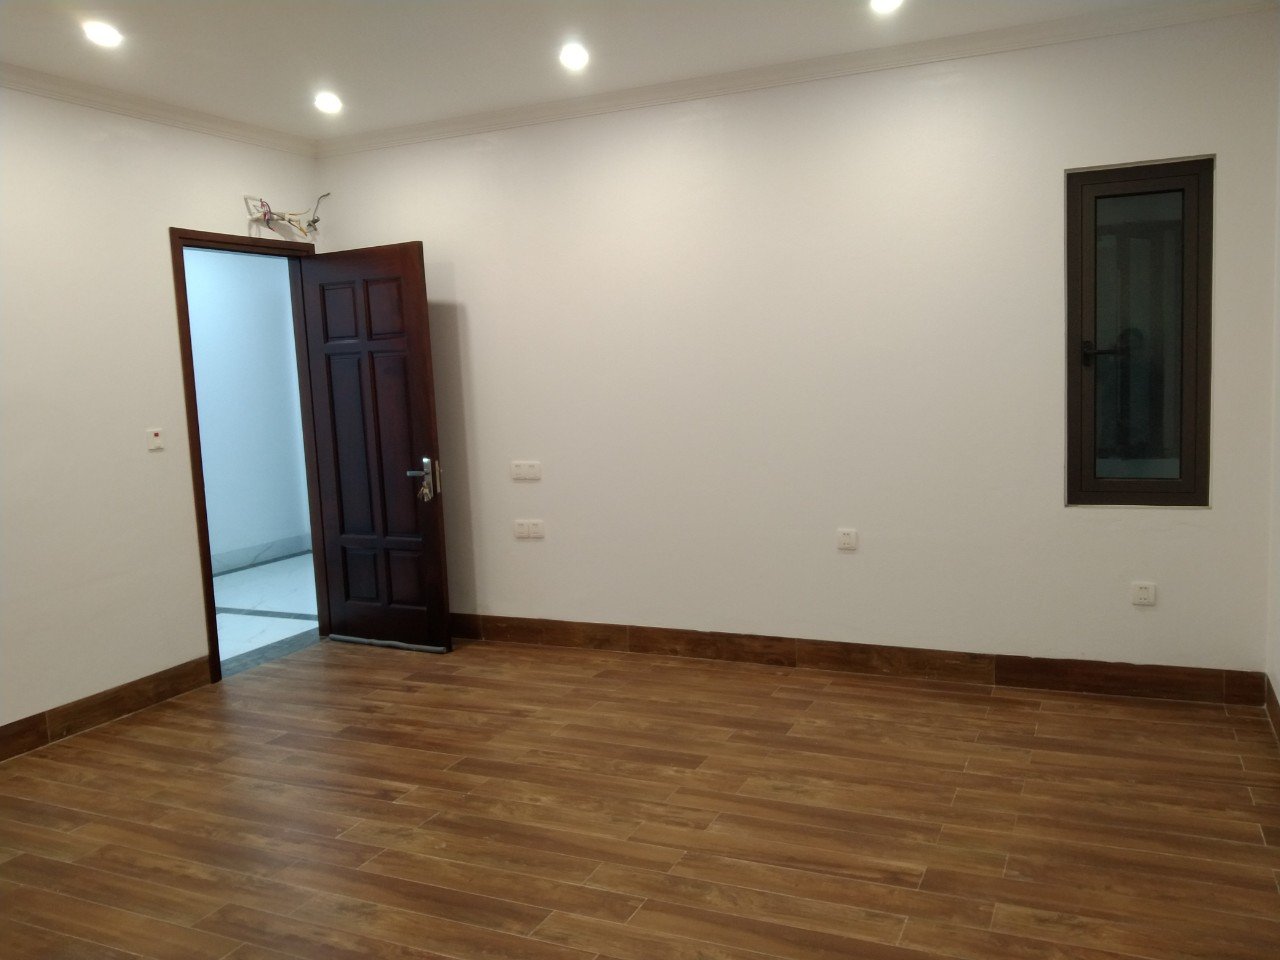 Cho thuê nhà, văn phòng Vĩnh Yên – Vĩnh Phúc 30